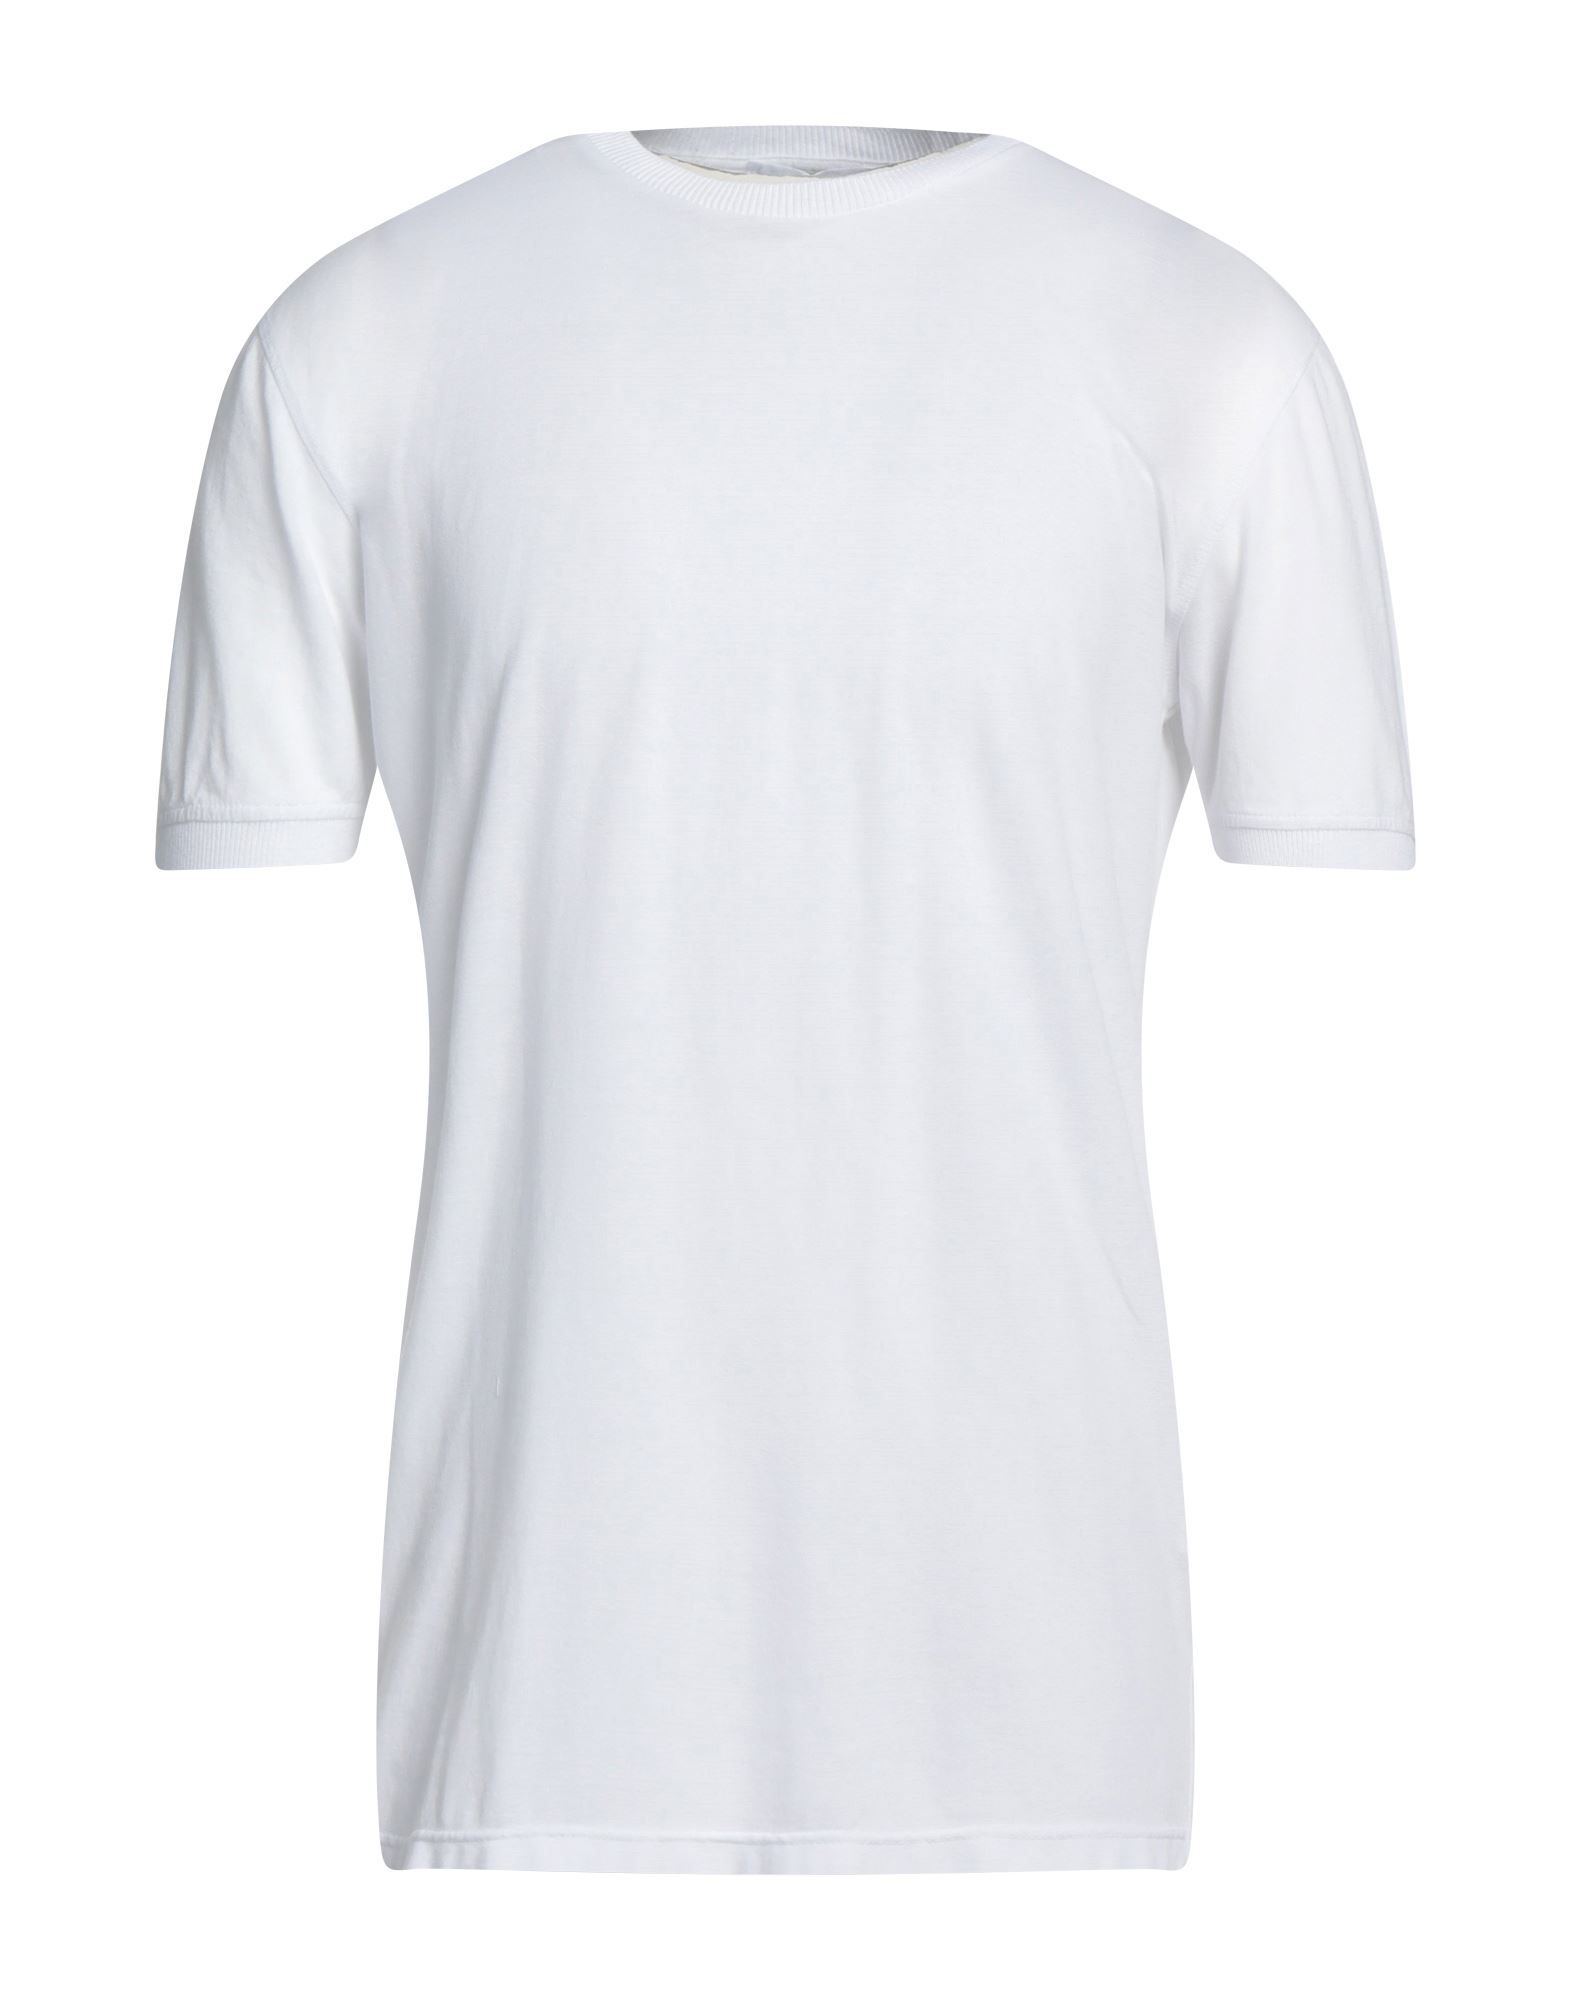 Shop Diktat Man T-shirt White Size Xxl Cotton